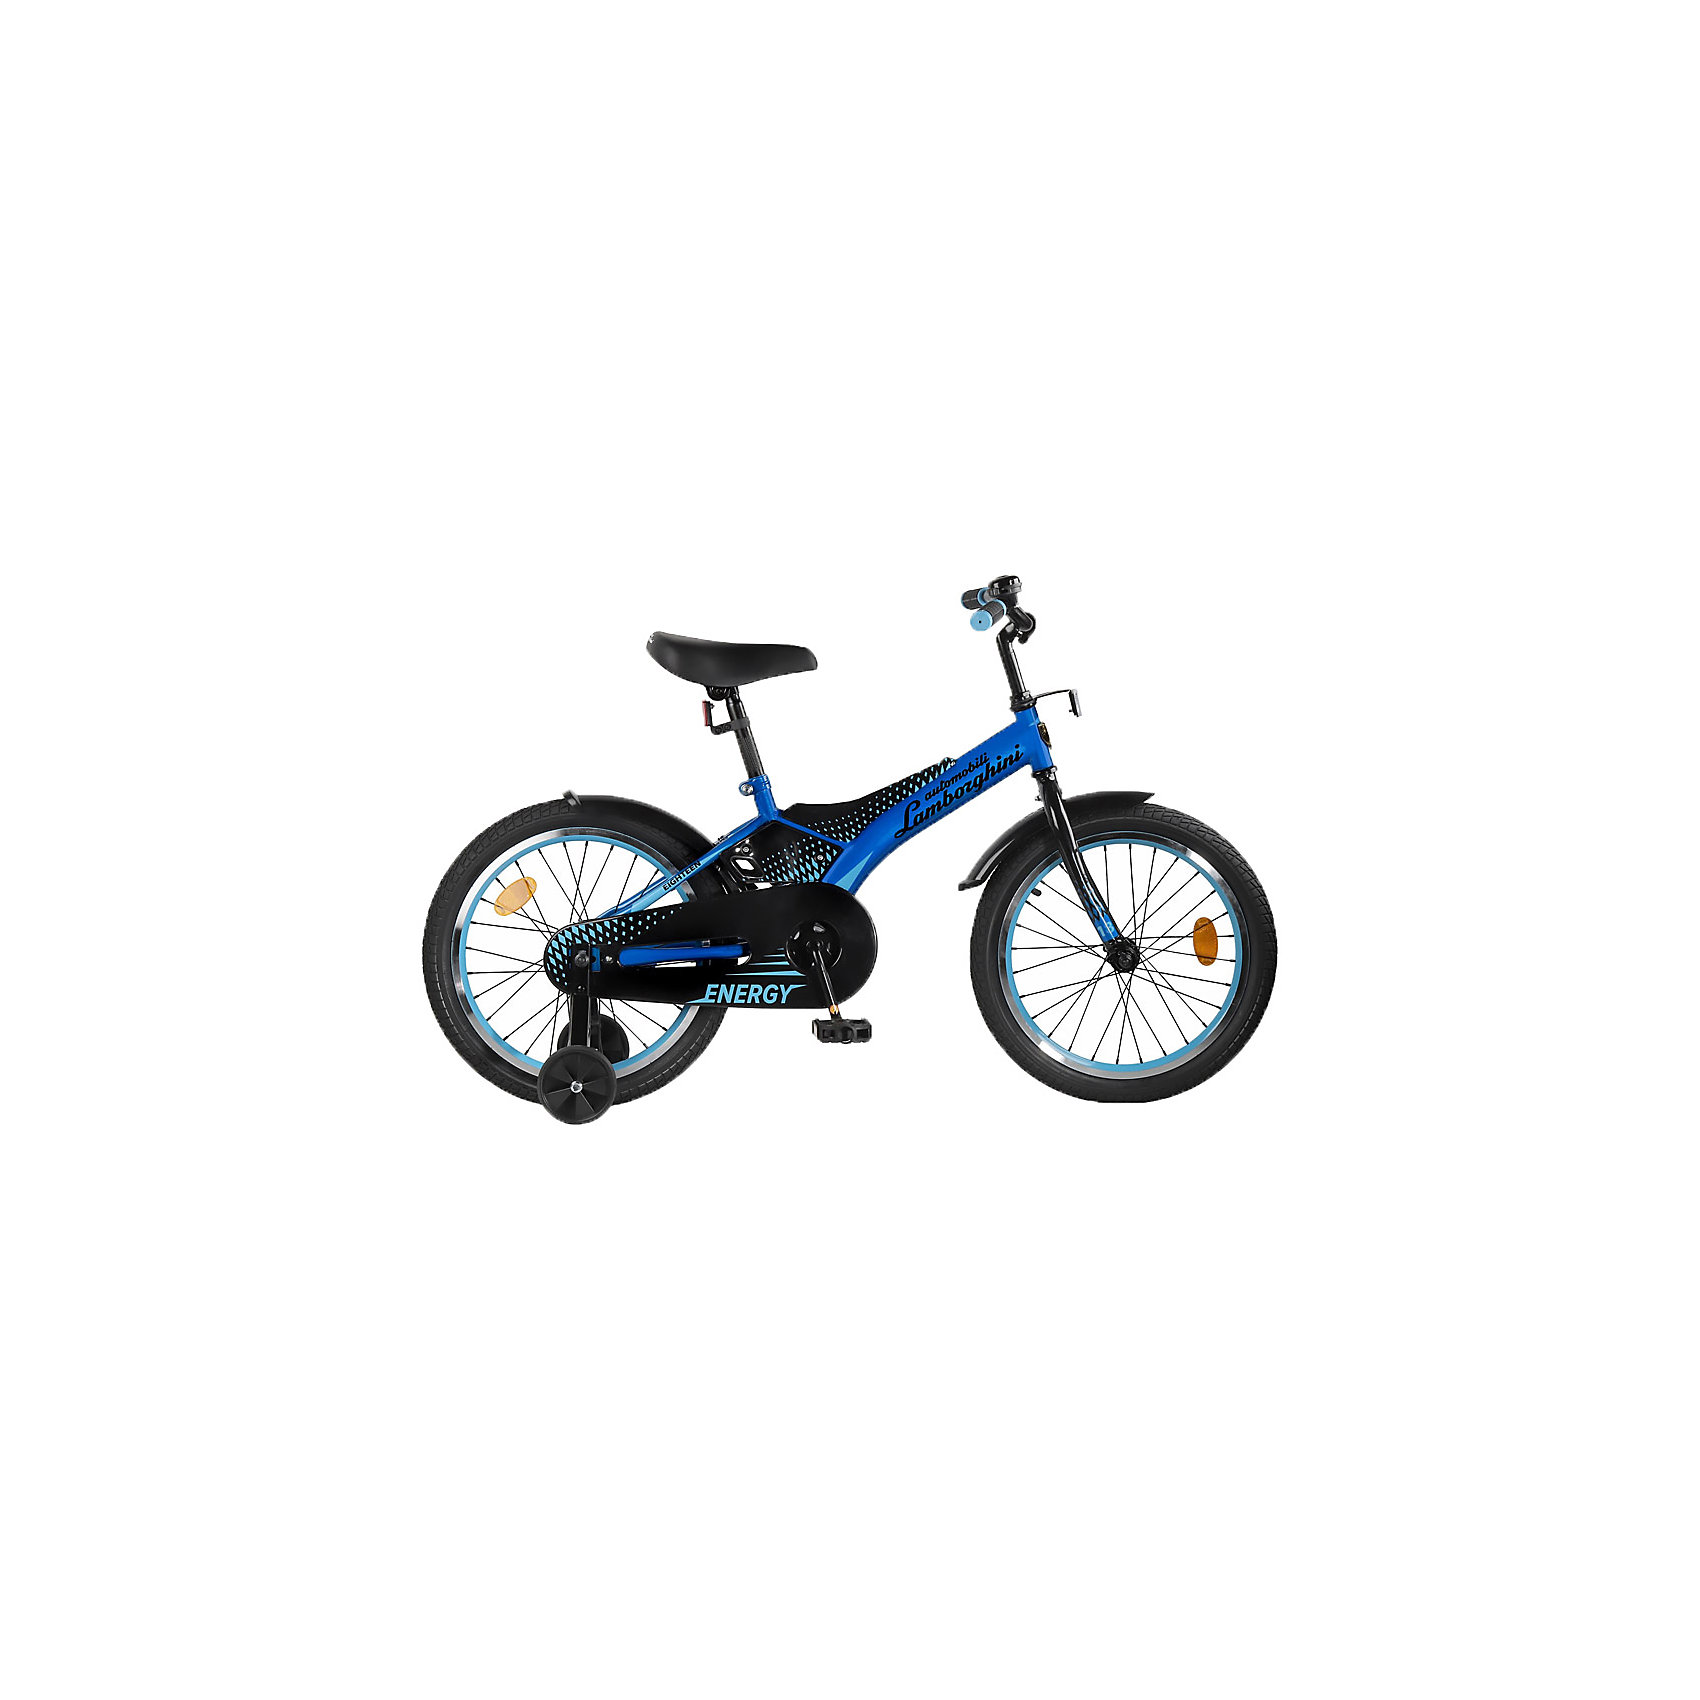 фото Детский велосипед automobili lamborghini energy , рама сталь , диск 18 алюминий , цвет синий